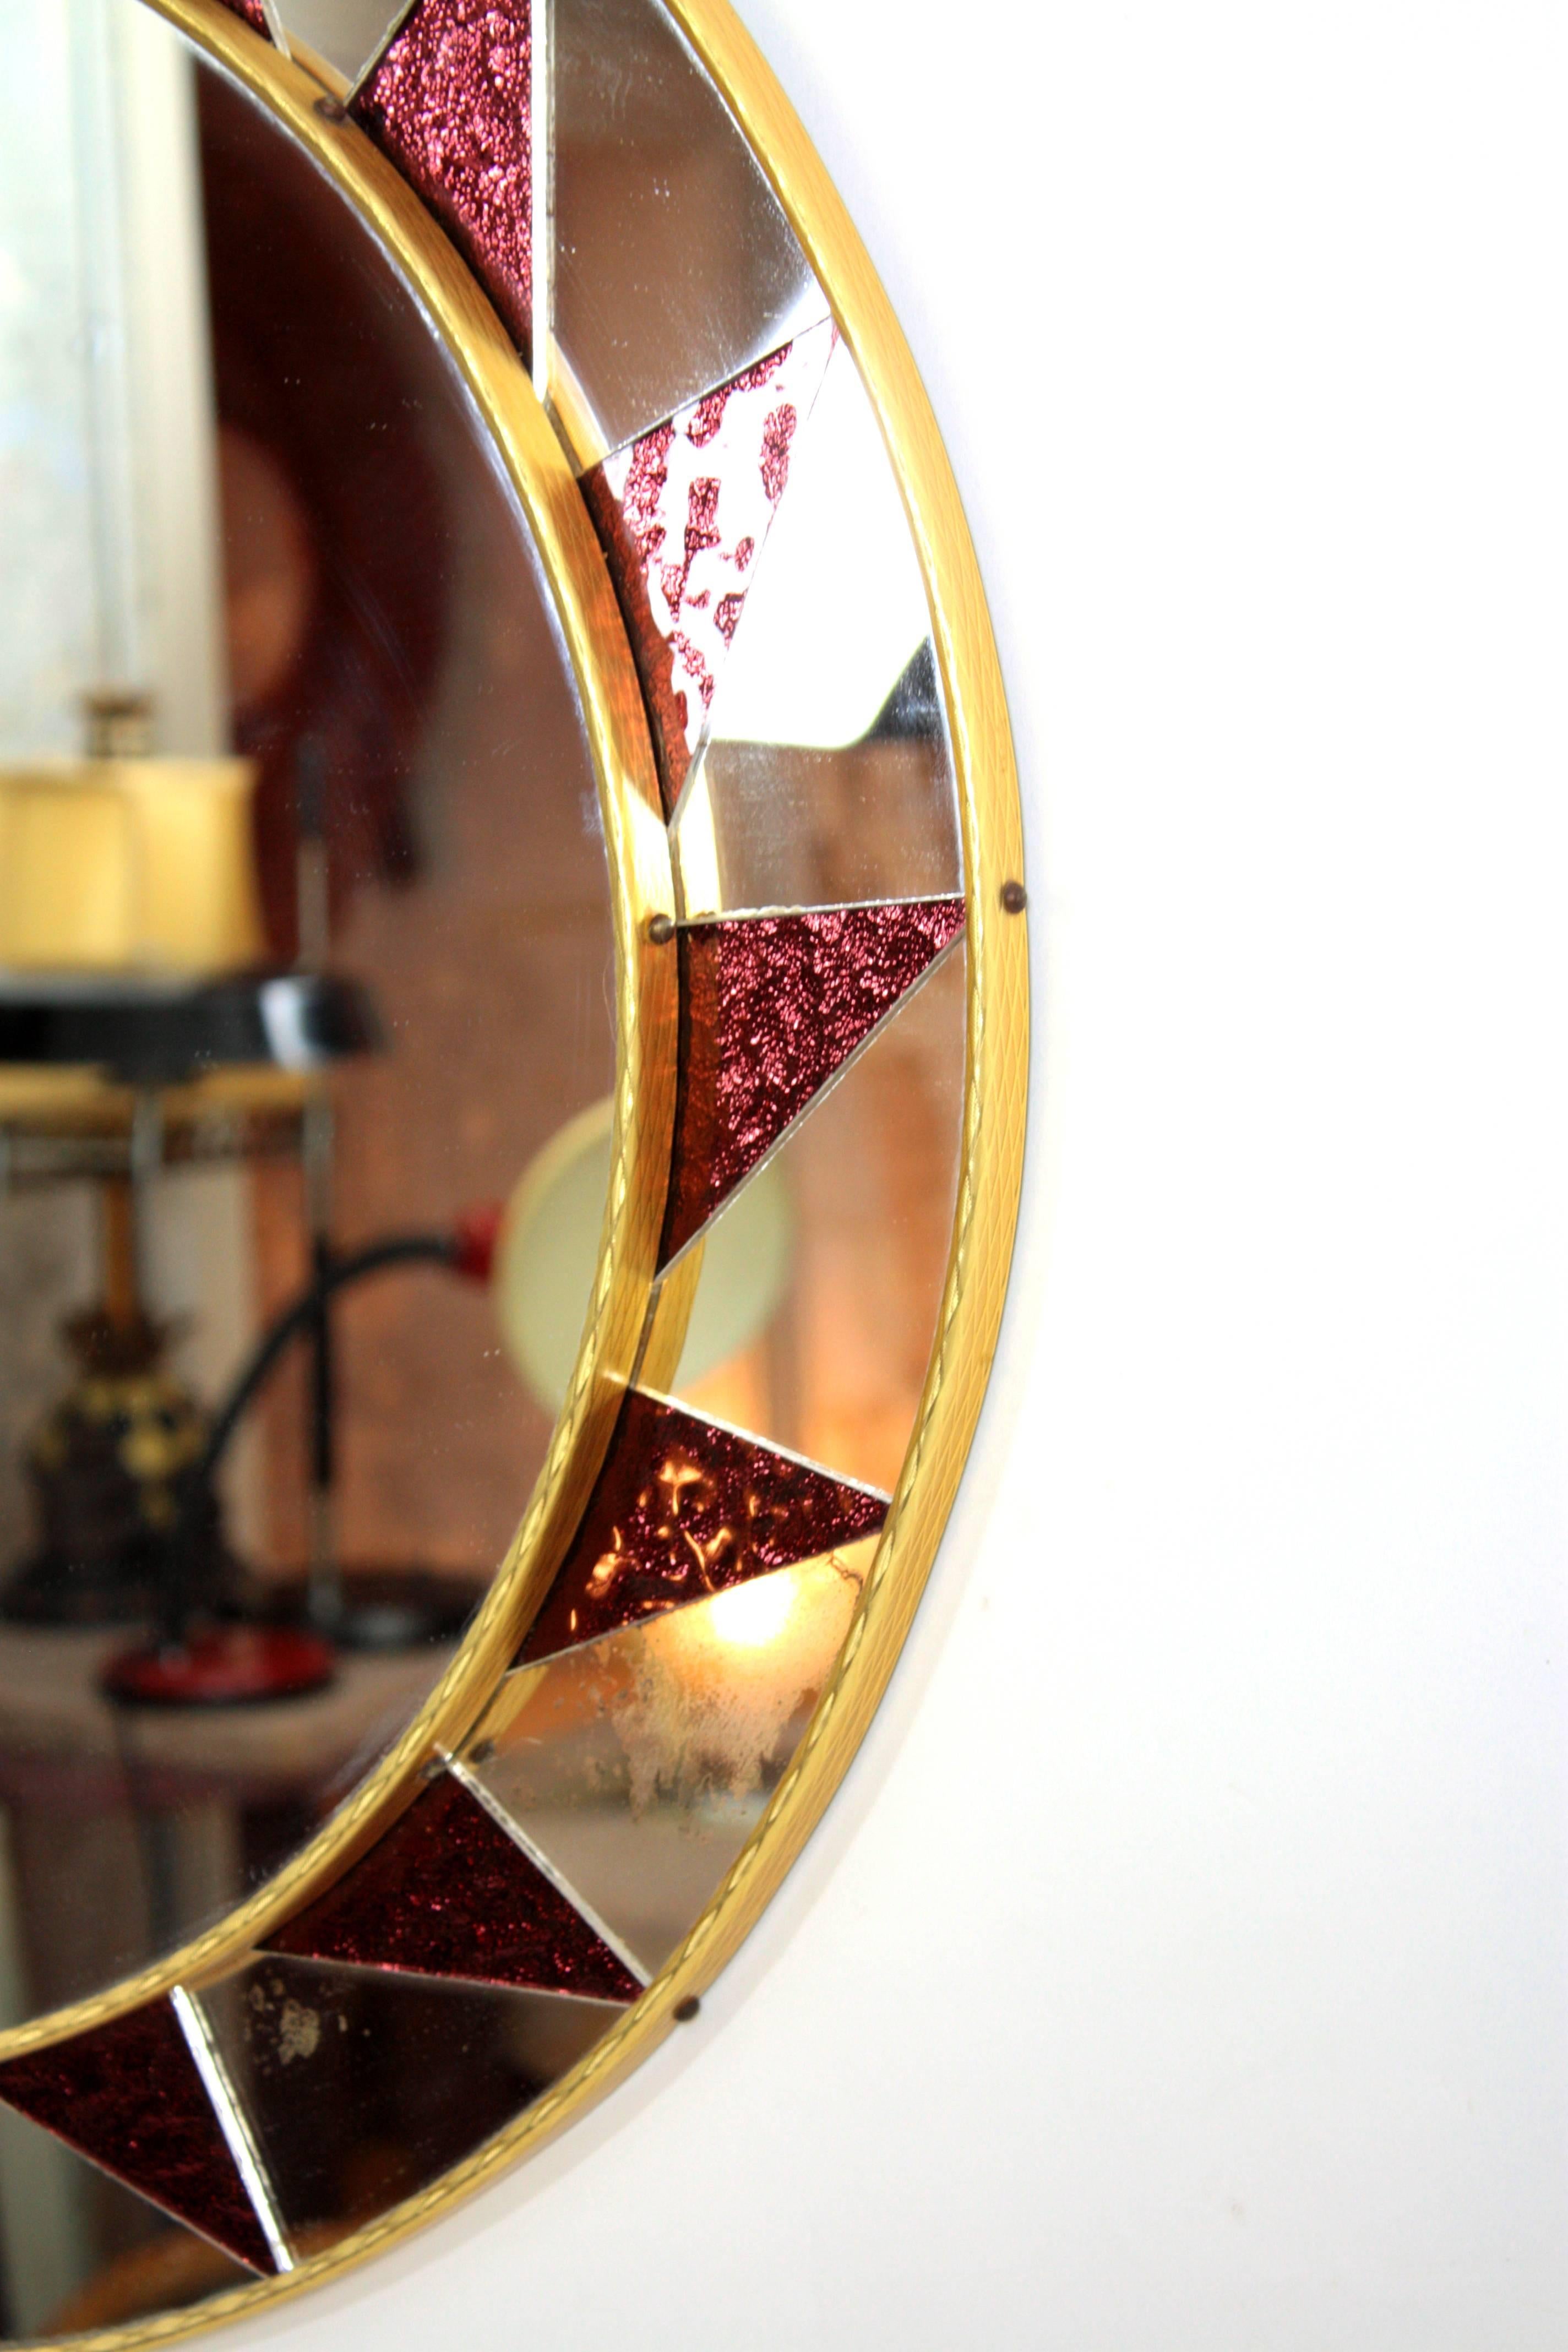 Spanischer runder Sonnenspiegel aus der Mitte des Jahrhunderts mit irisierenden granatfarbenen Spiegelgläsern.
Zentraler runder Spiegel umrahmt von einem erstaunlichen Muster mit Spiegeln und bunten Granatstücken  aus Glas.
Spanien, 1960er Jahre